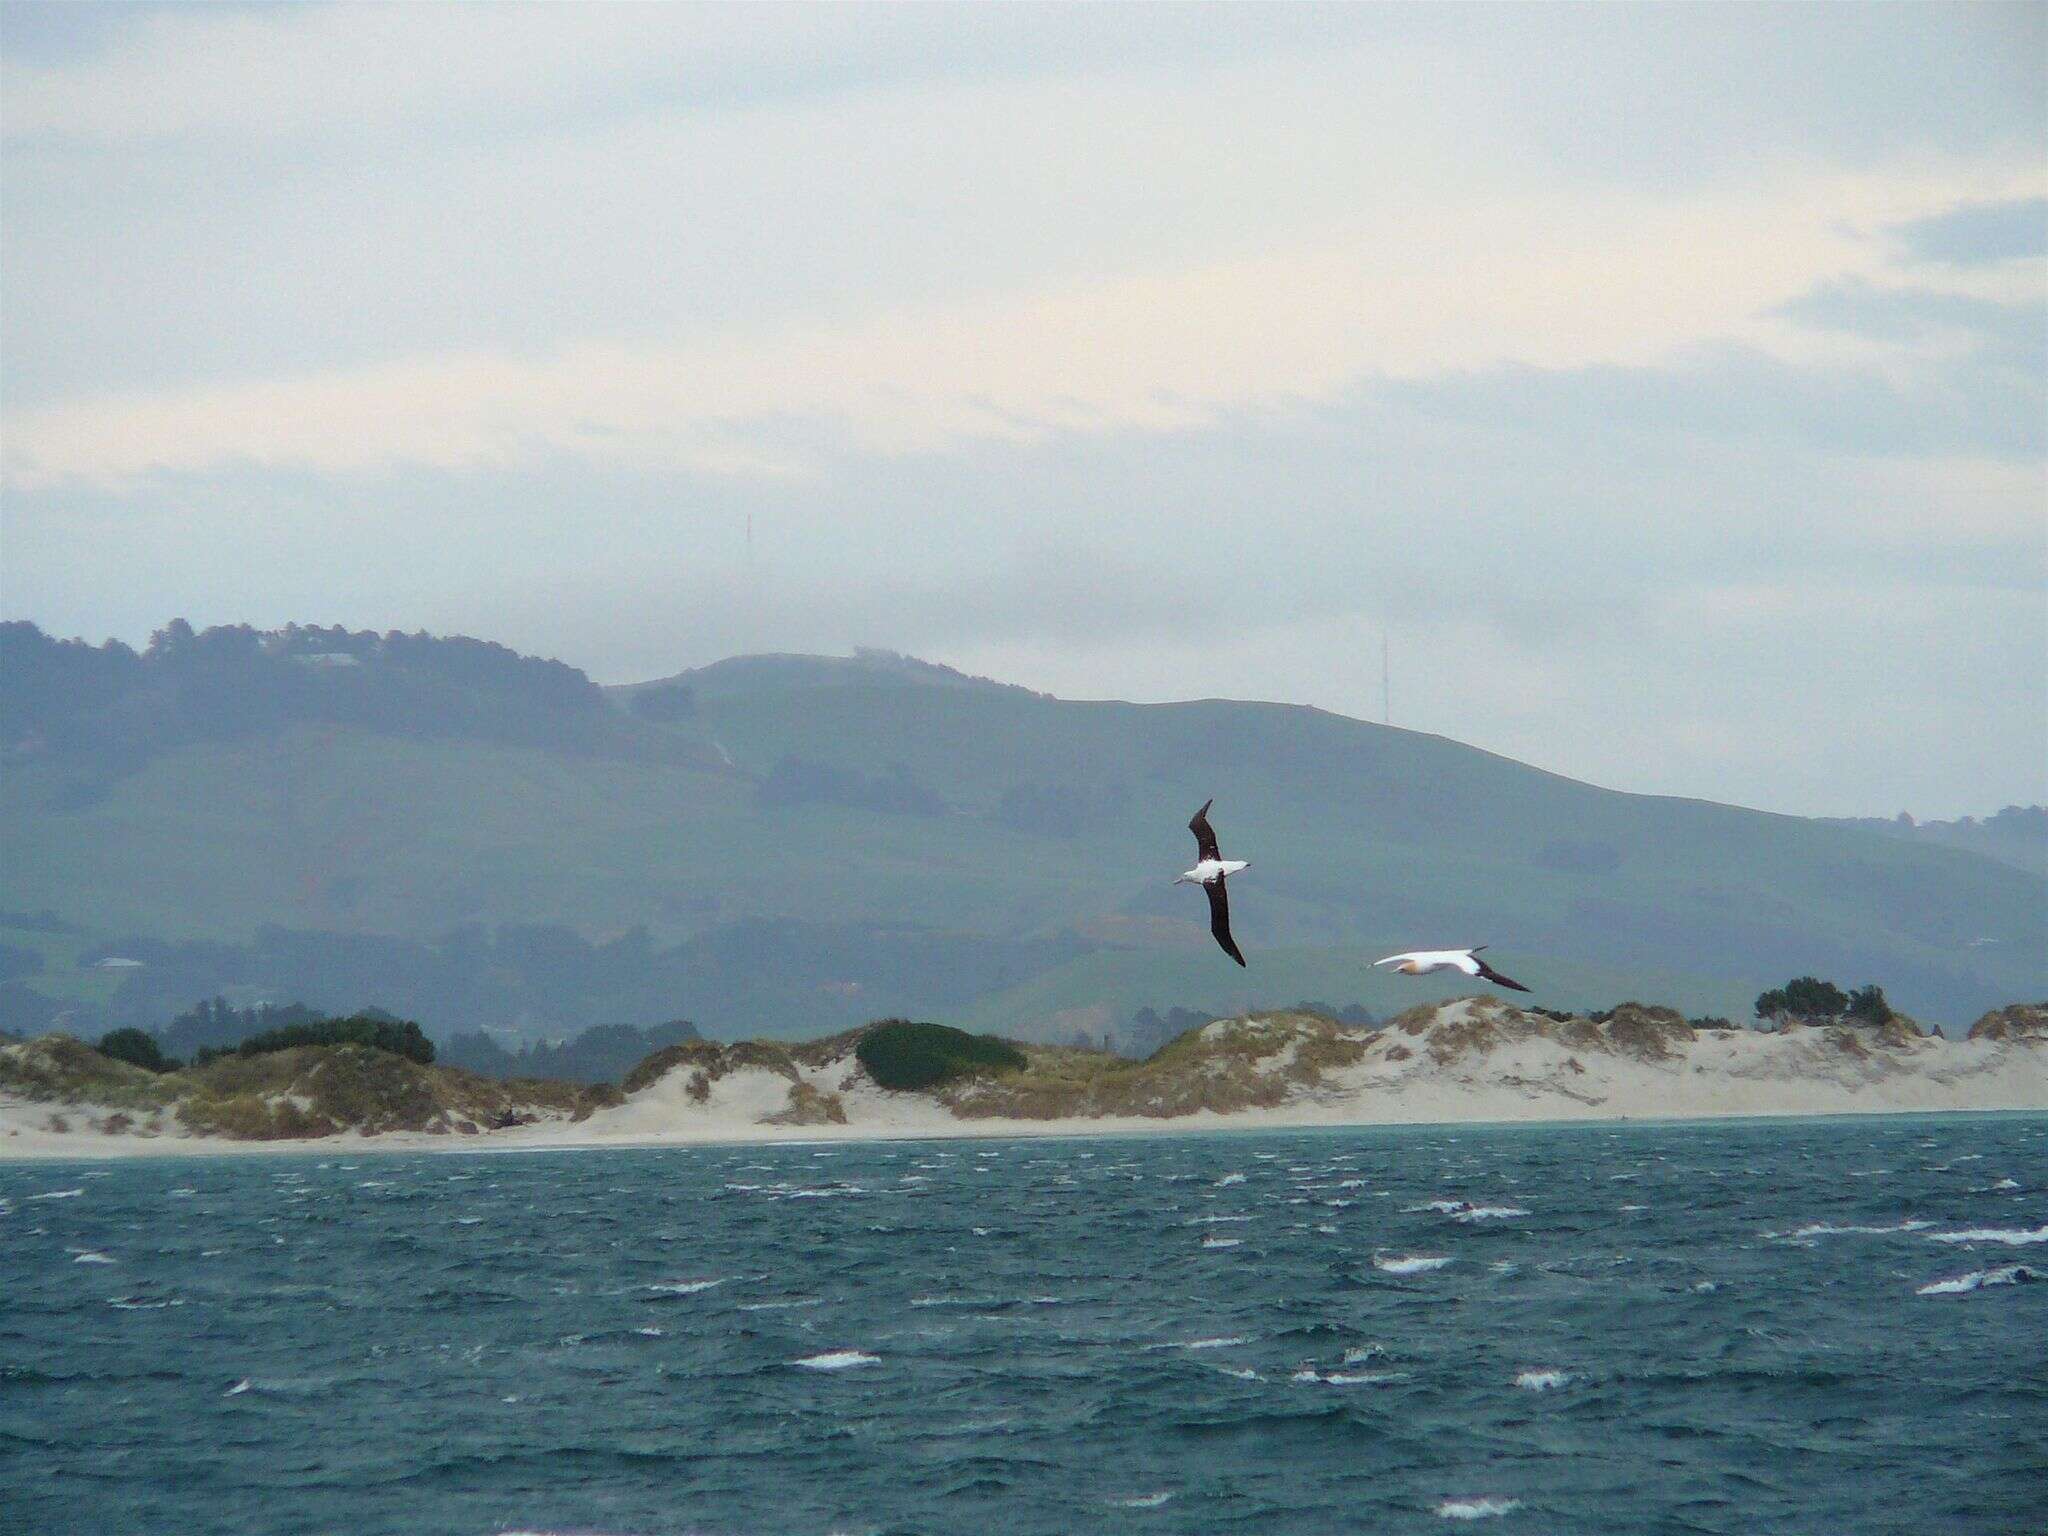 Image de Albatros royal